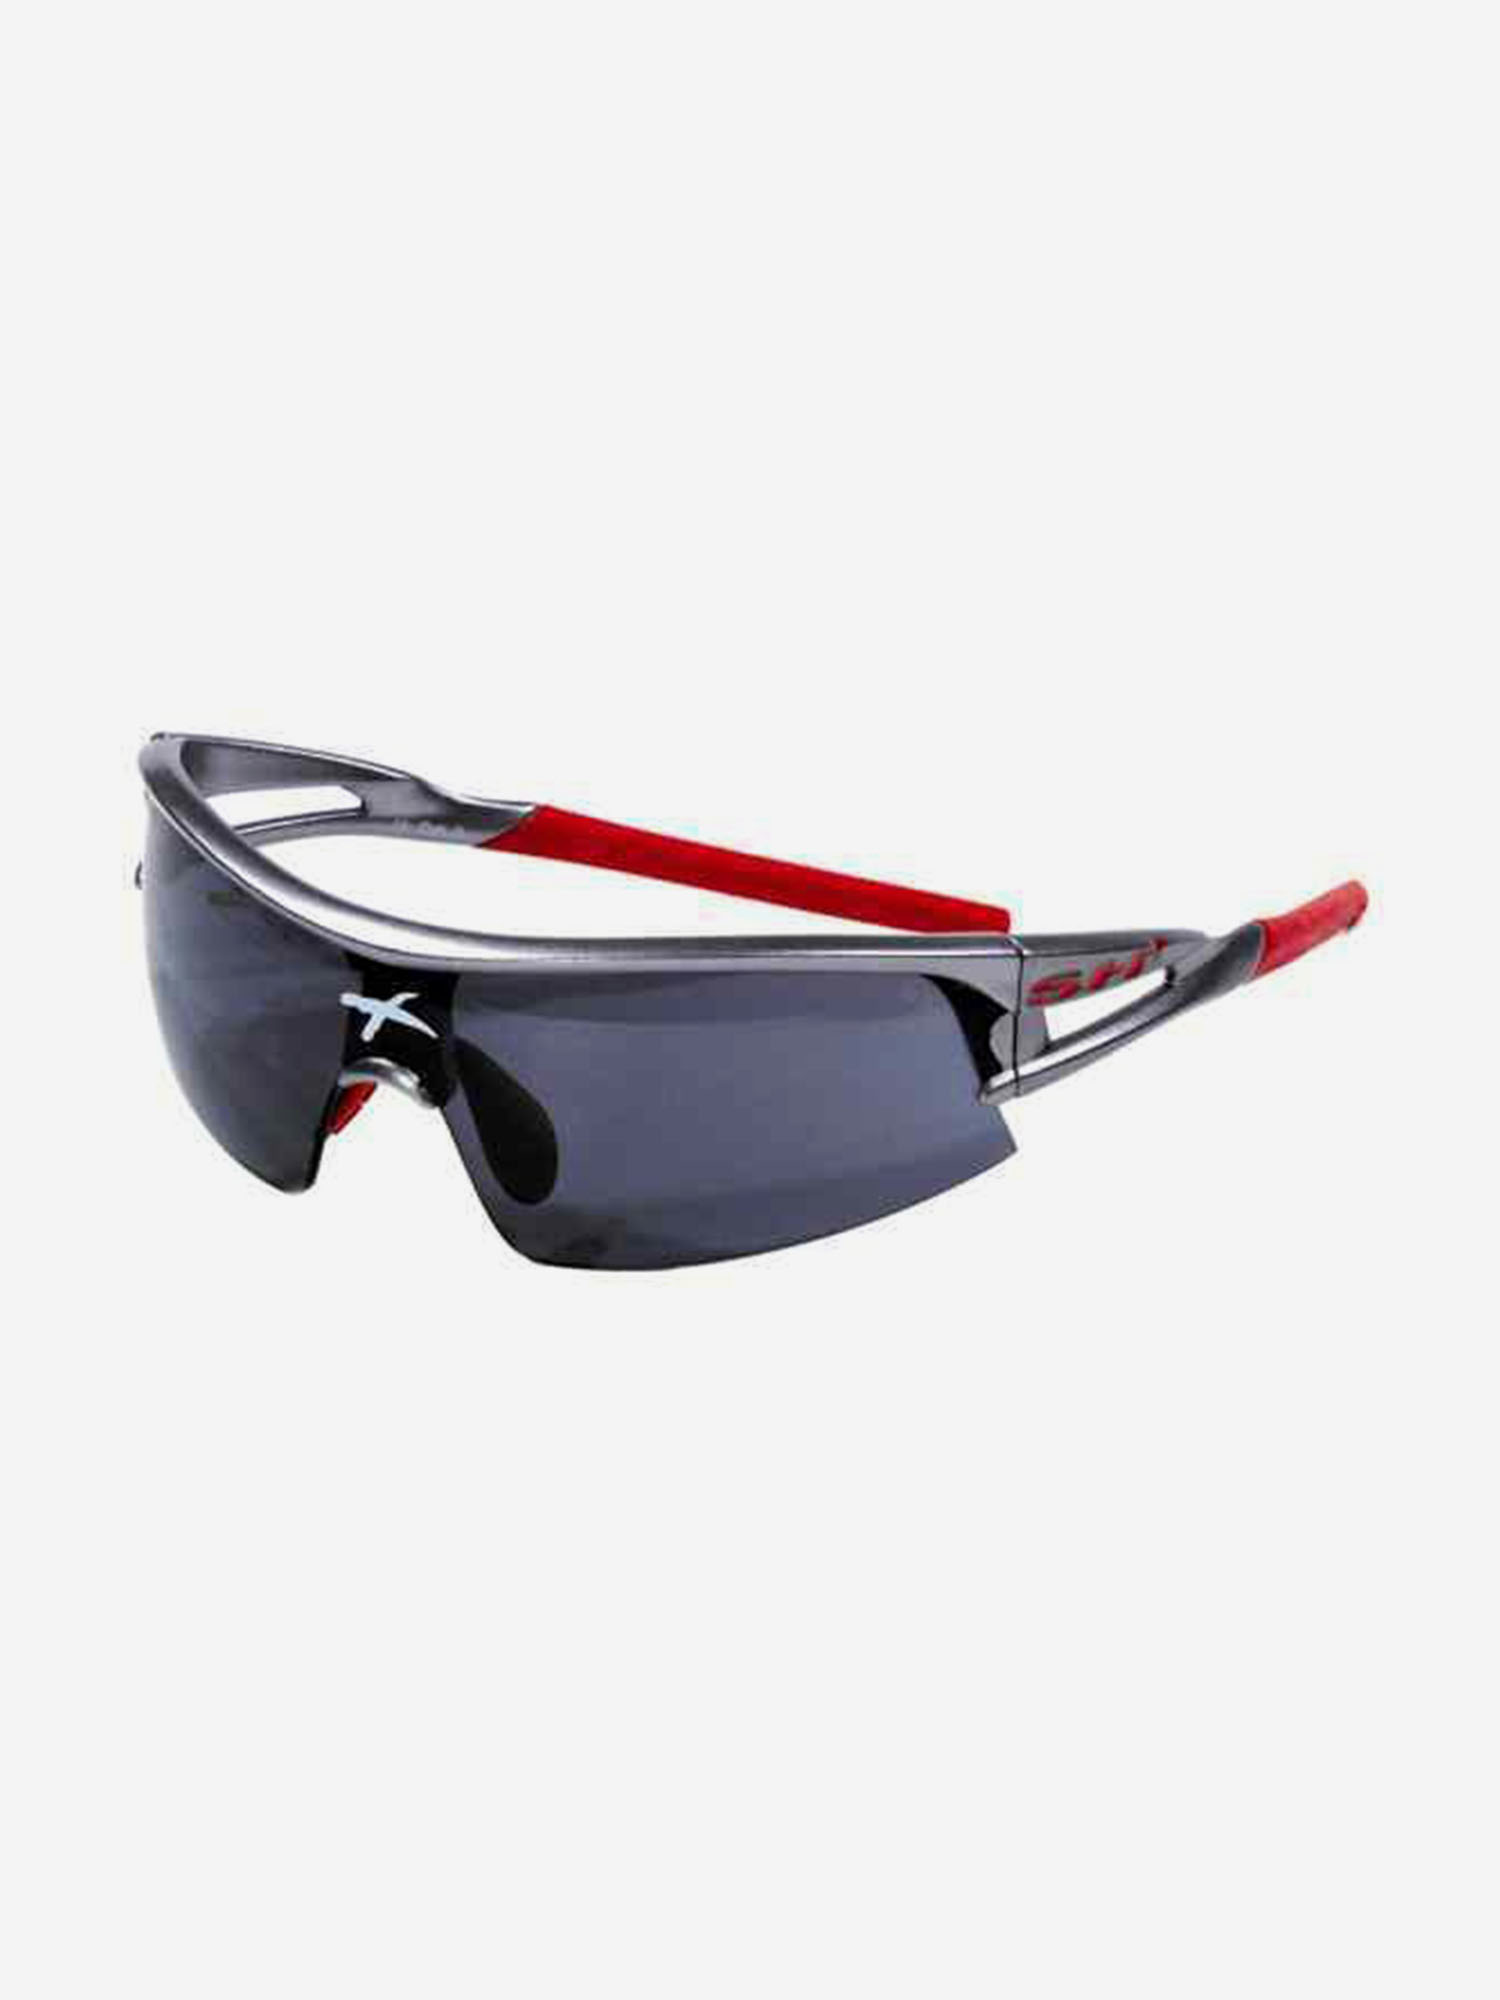 Спортивные очки SH+ RG 4600 Small Face gun metal/red (+2 доп. линзы), Серебряный